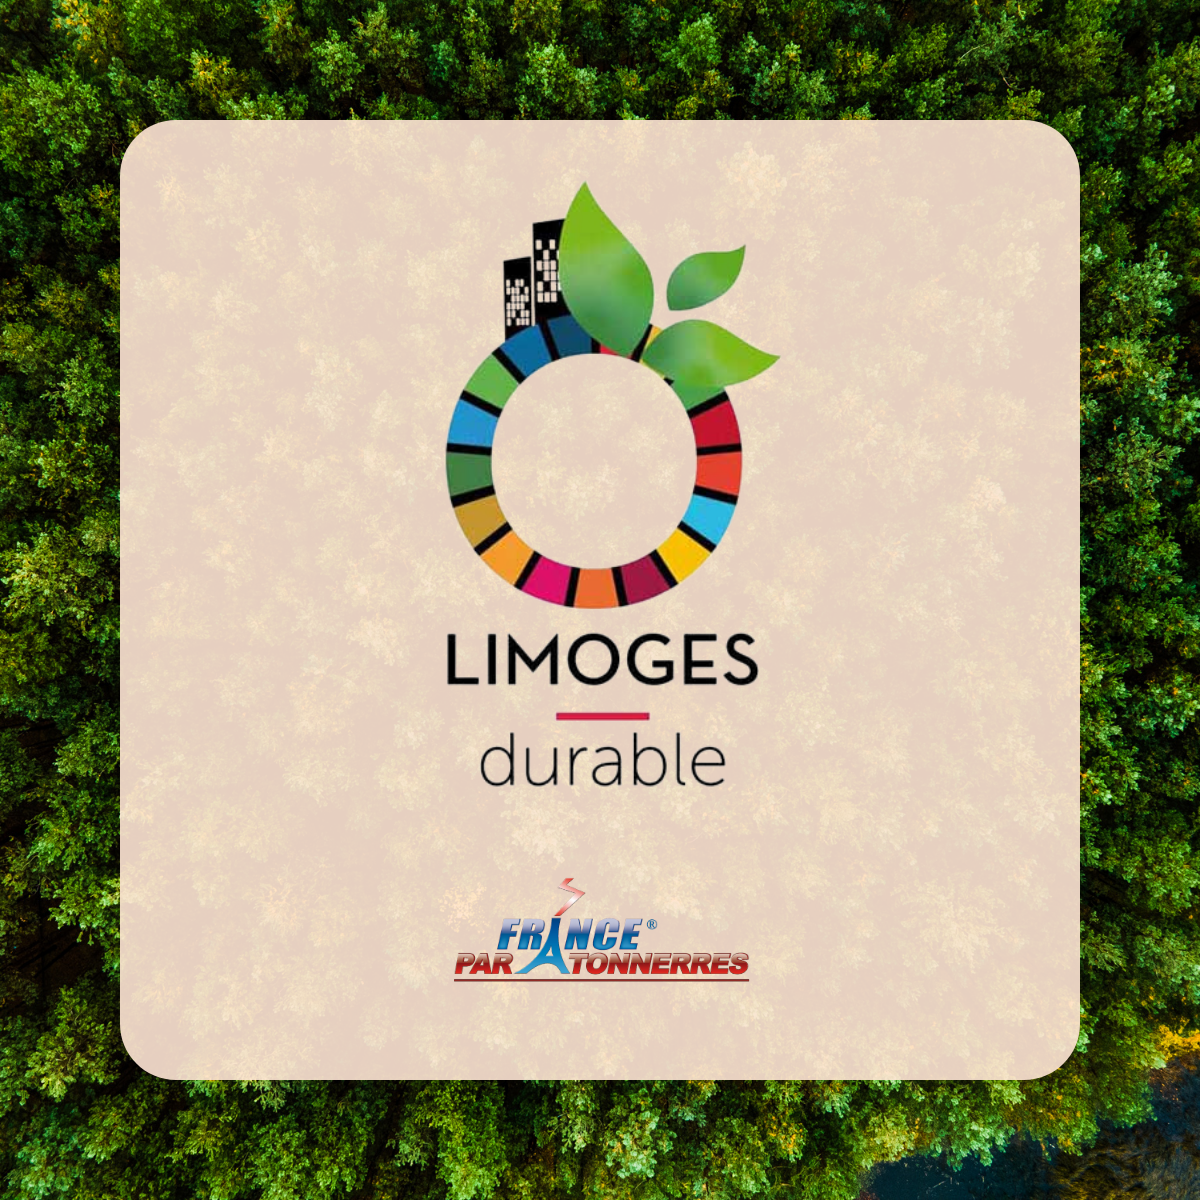 France Paratonnerres obtient le label LIMOGES DURABLE !